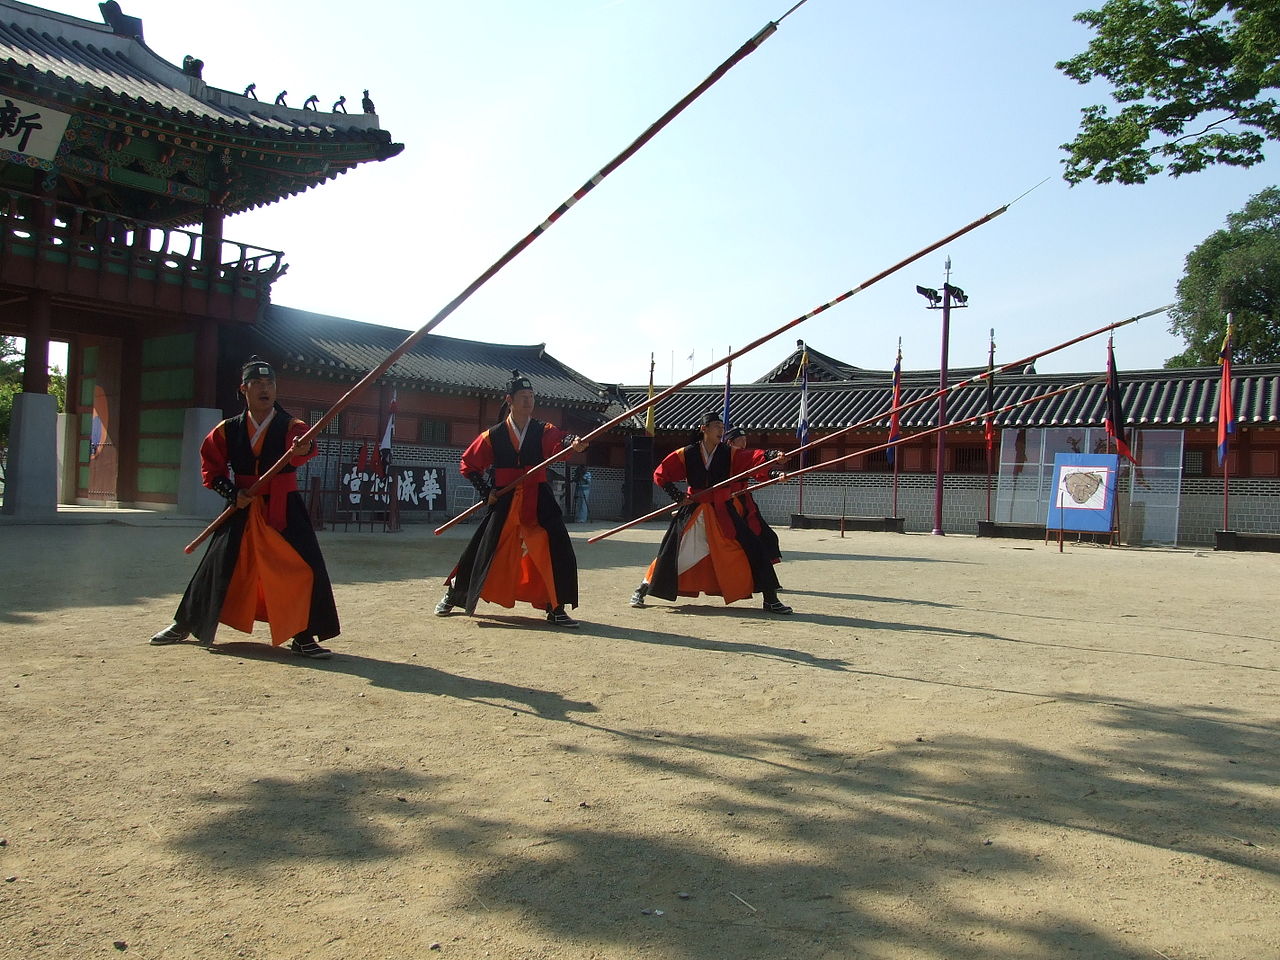 Demonstration of jukjangchang taken at the Hwaseong castle in Suwon